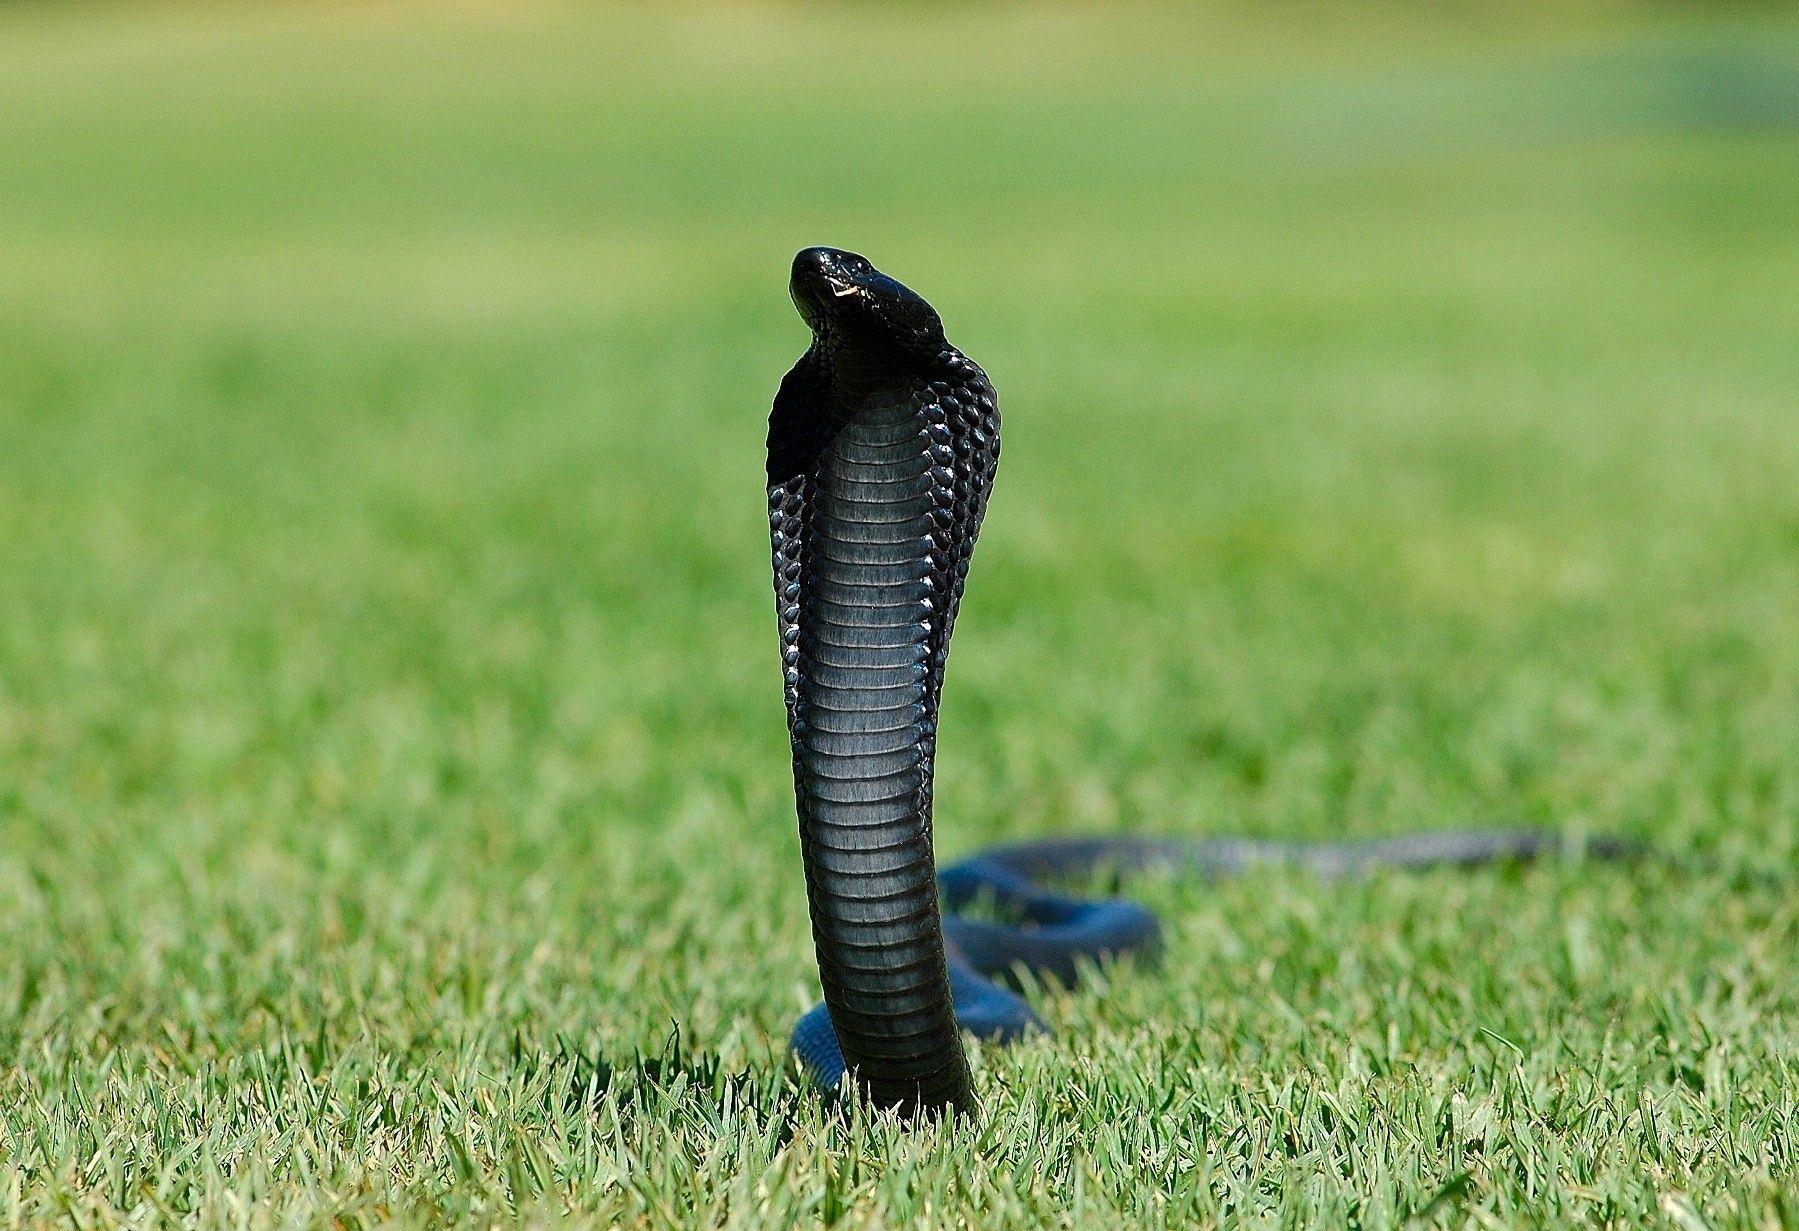 Black King Cobra Snake